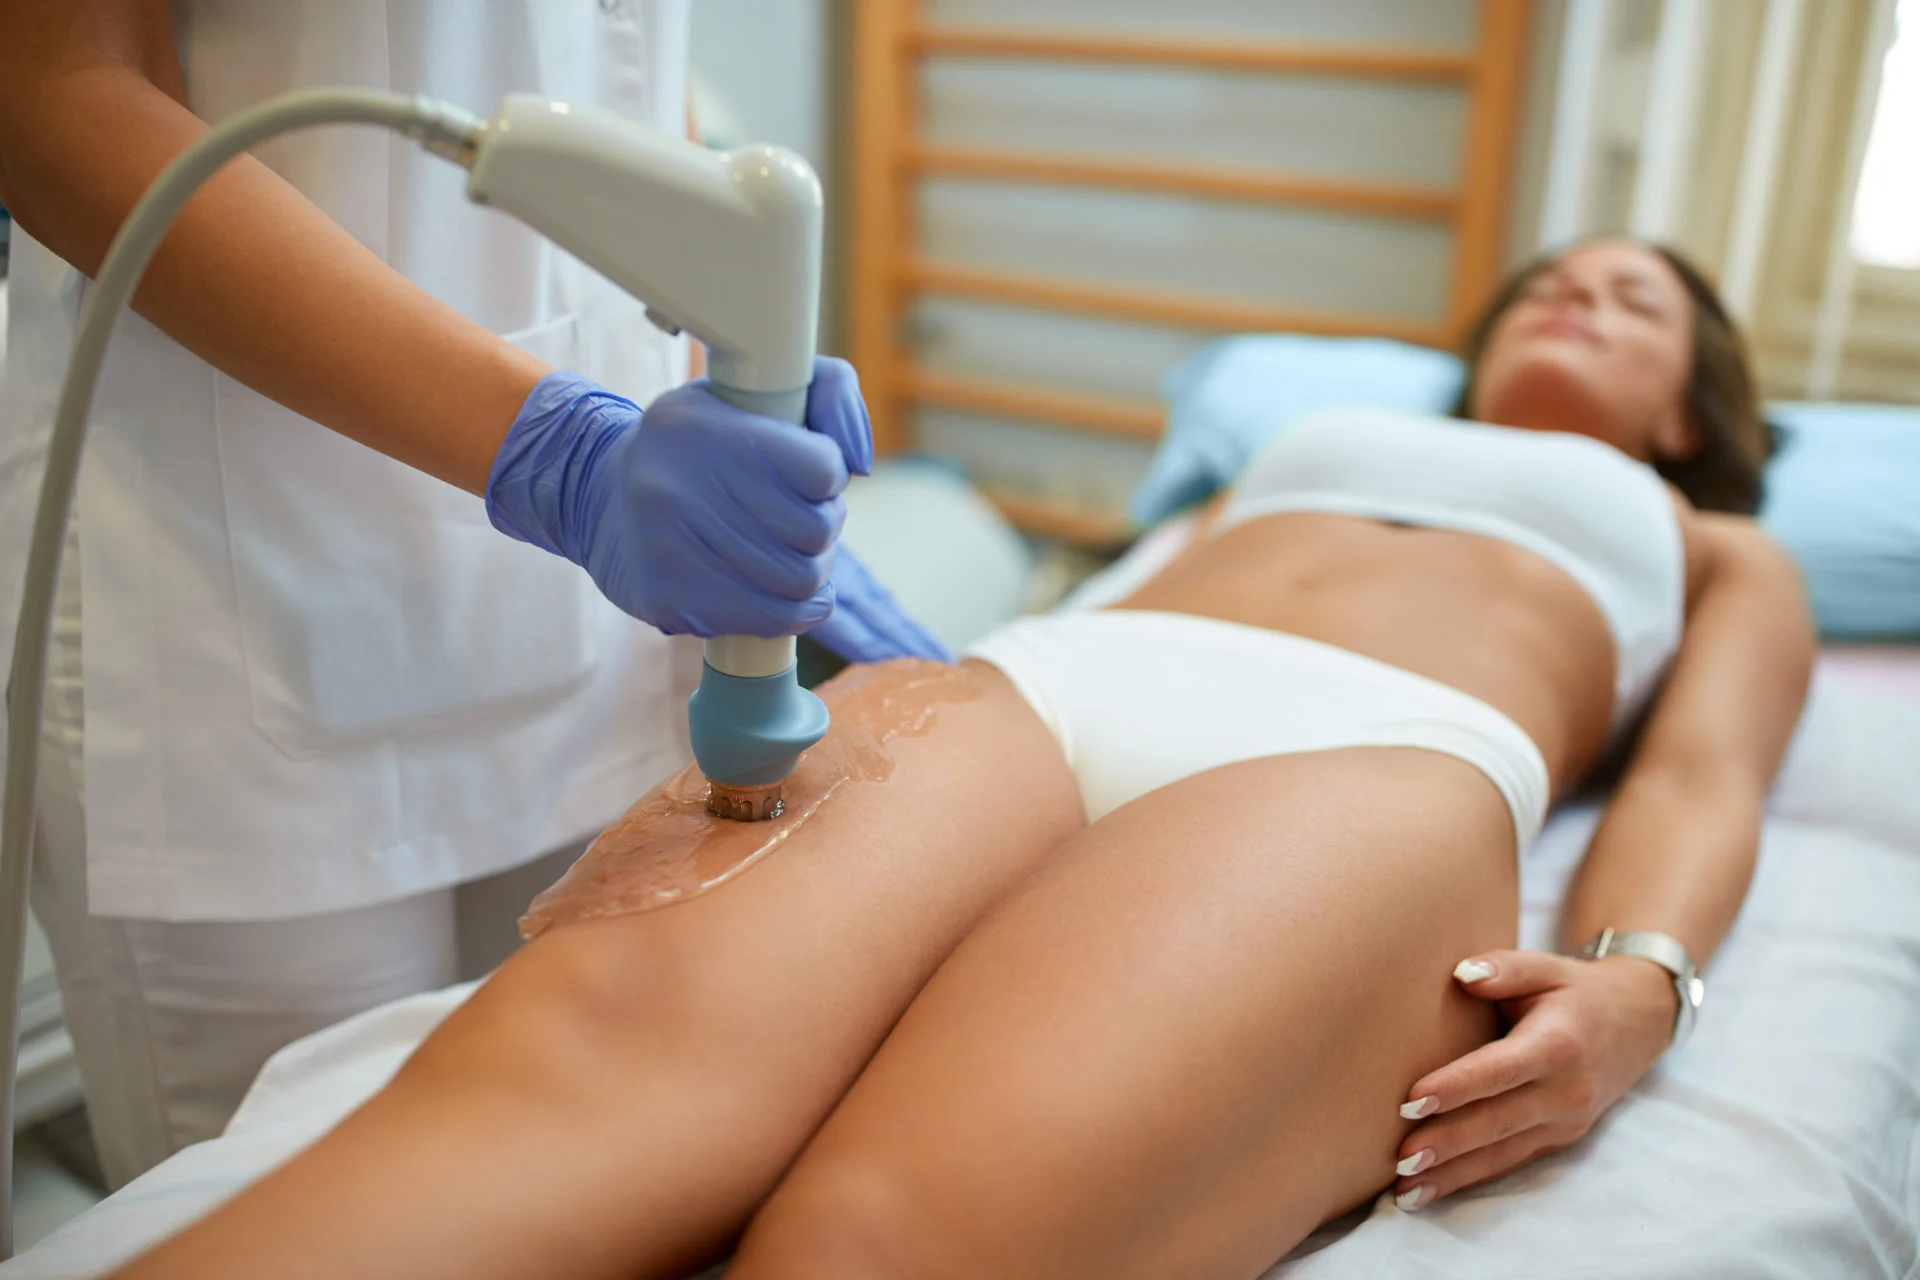 Image illustrant un traitement mésothérapique pour les problèmes de cellulite. La mésothérapie est un traitement médical pour éliminer la cellulite et redonner à la peau une apparence saine et lisse.